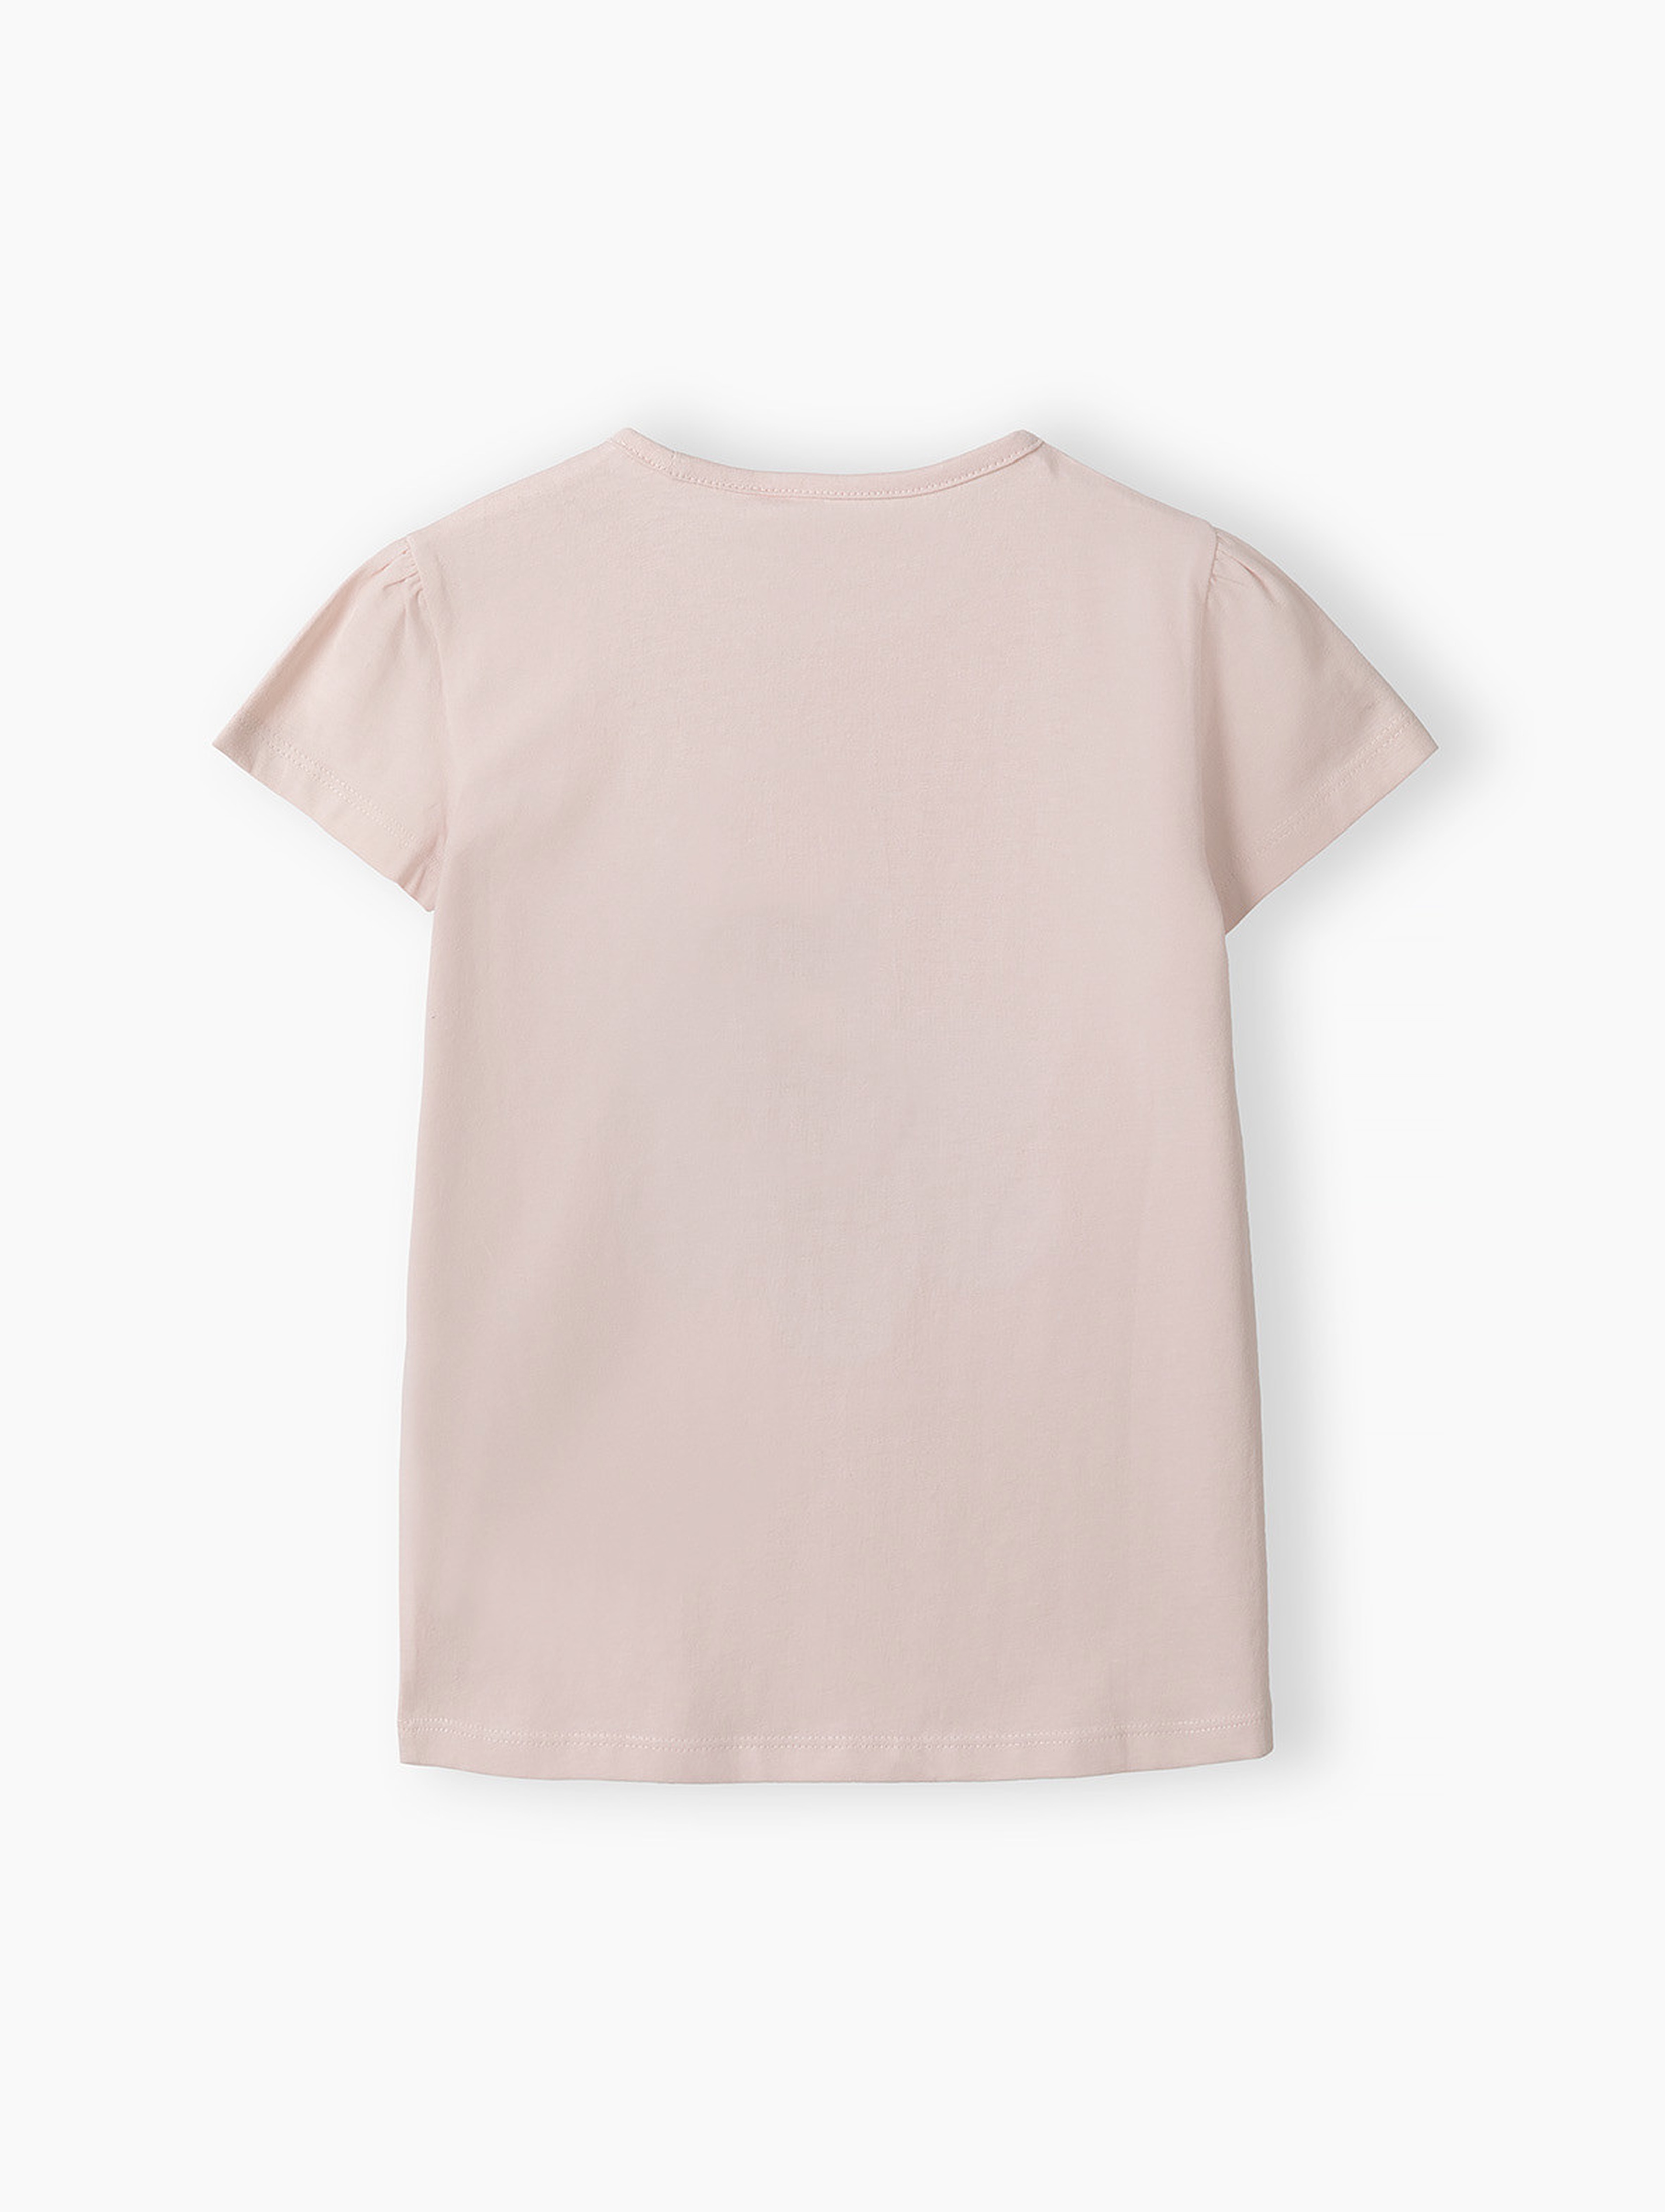 T-shirt różowy dziewczęcy z dwustronnymi cekinami